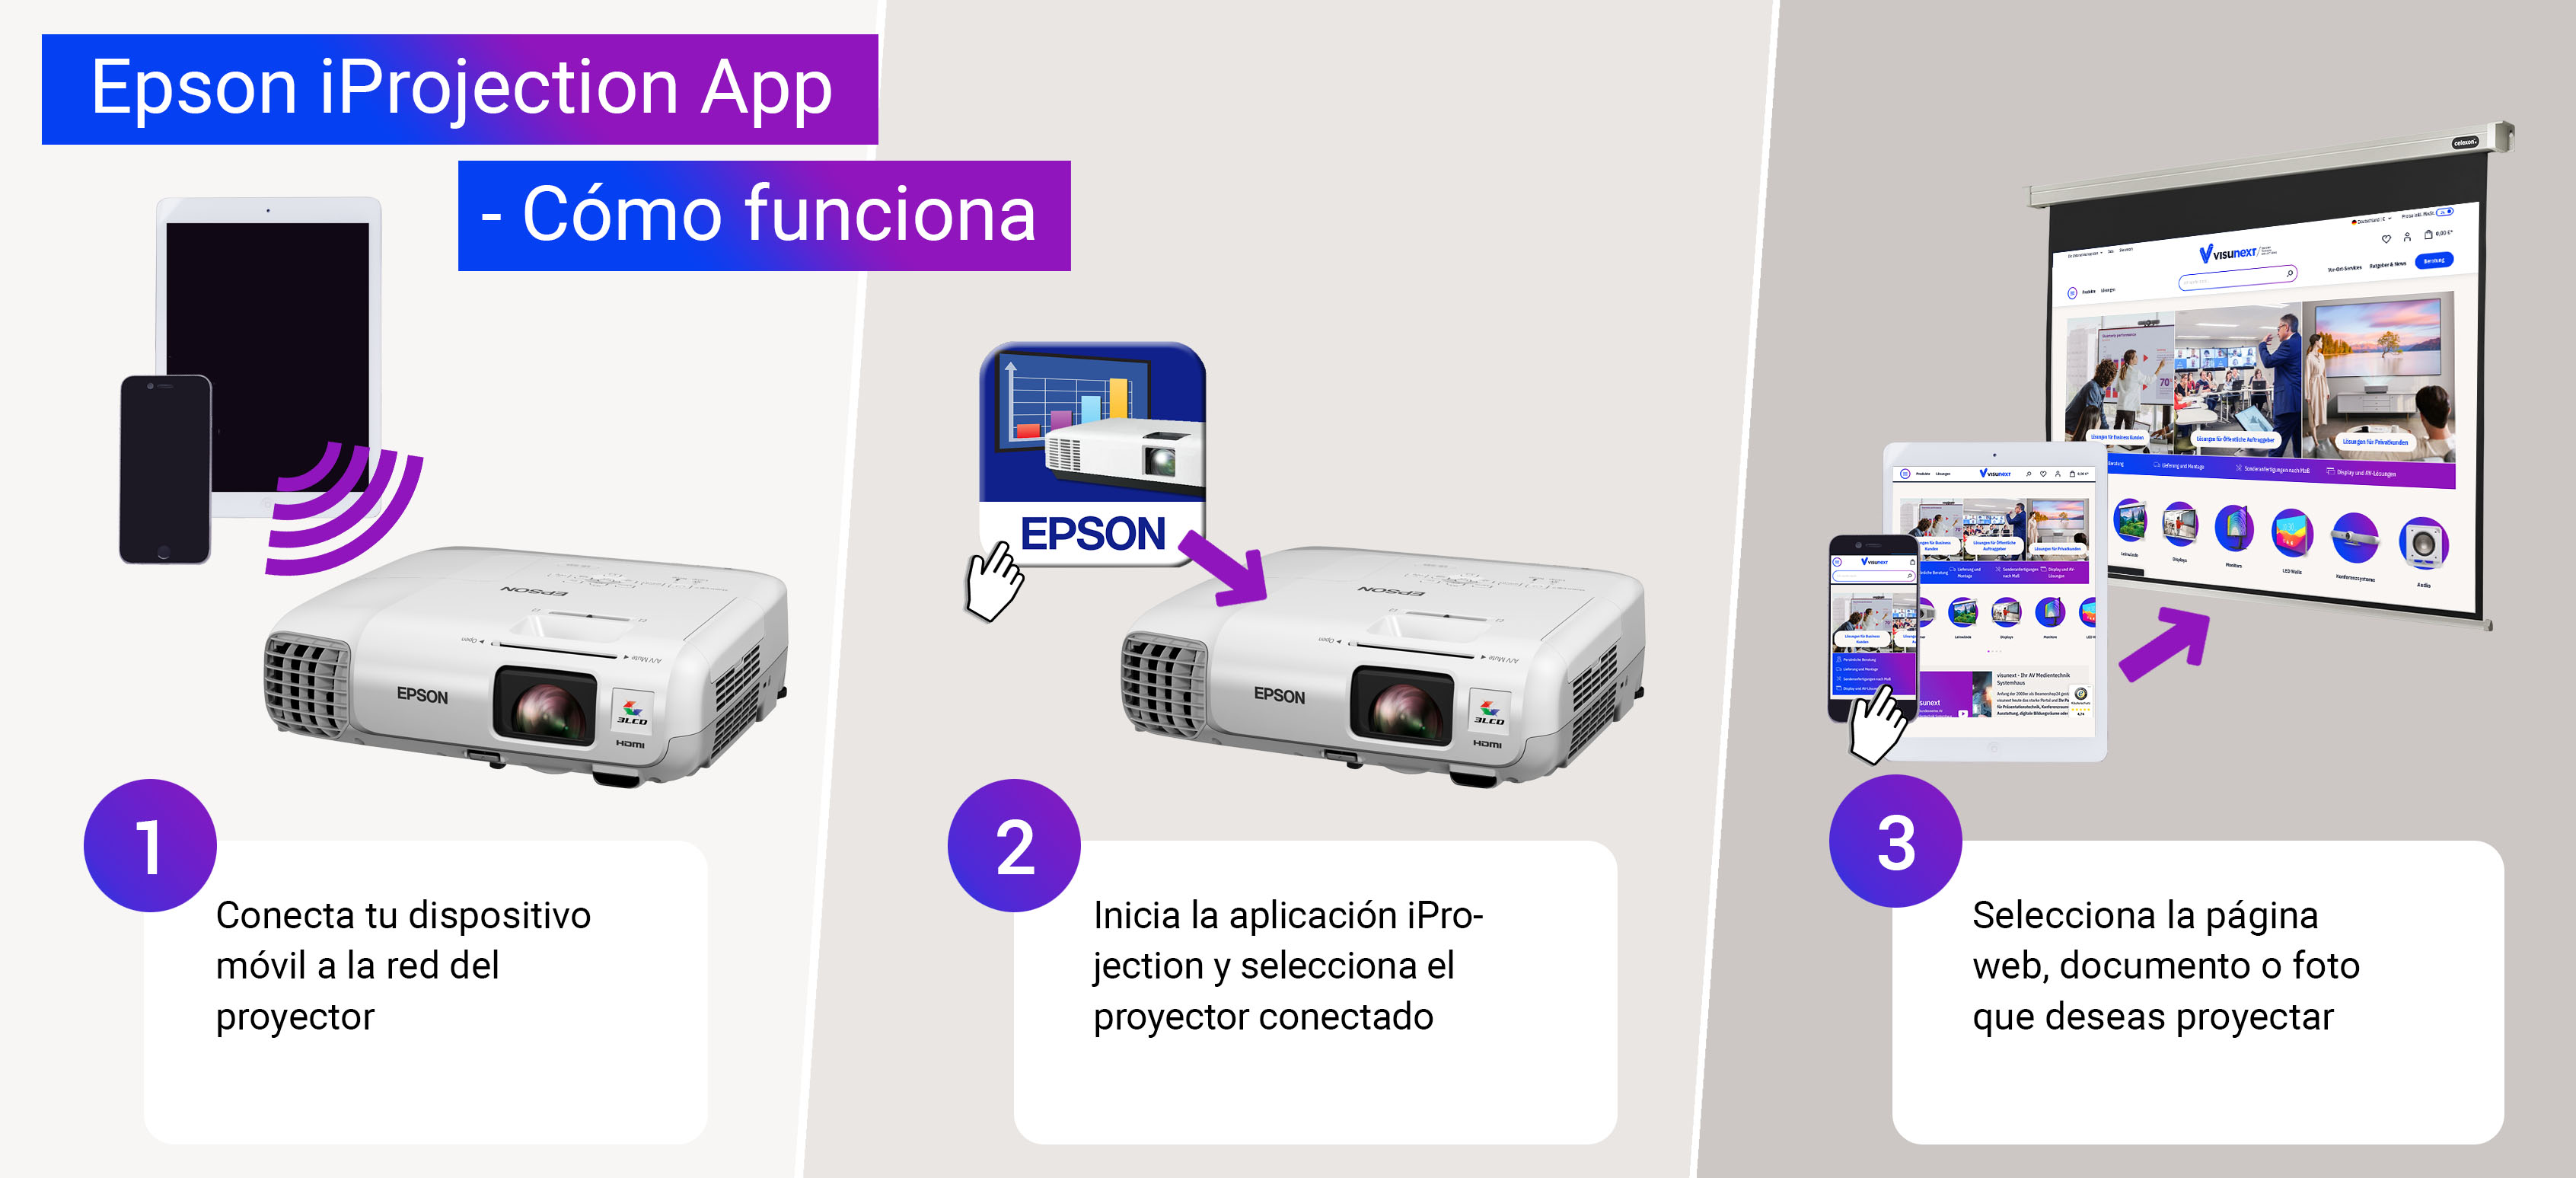  Epson iProjection App - Cómo funciona